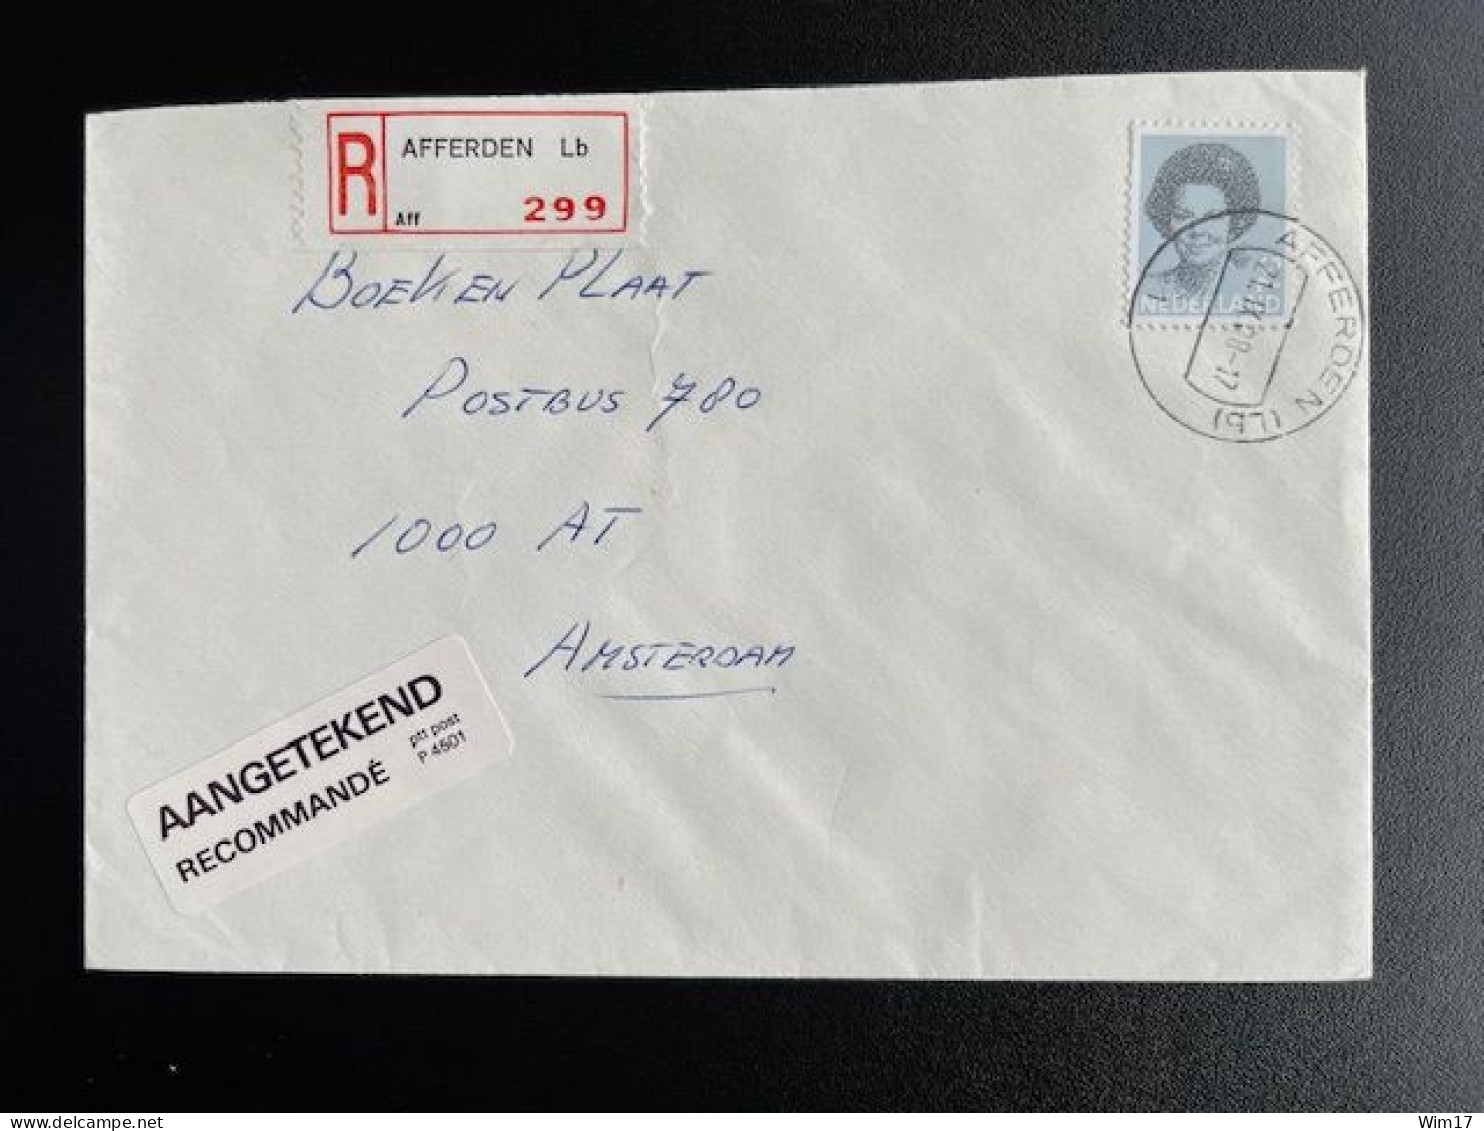 NETHERLANDS 1988 REGISTERED LETTER AFFERDEN (LB) TO AMSTERDAM 21-09-1988 NEDERLAND AANGETEKEND - Lettres & Documents